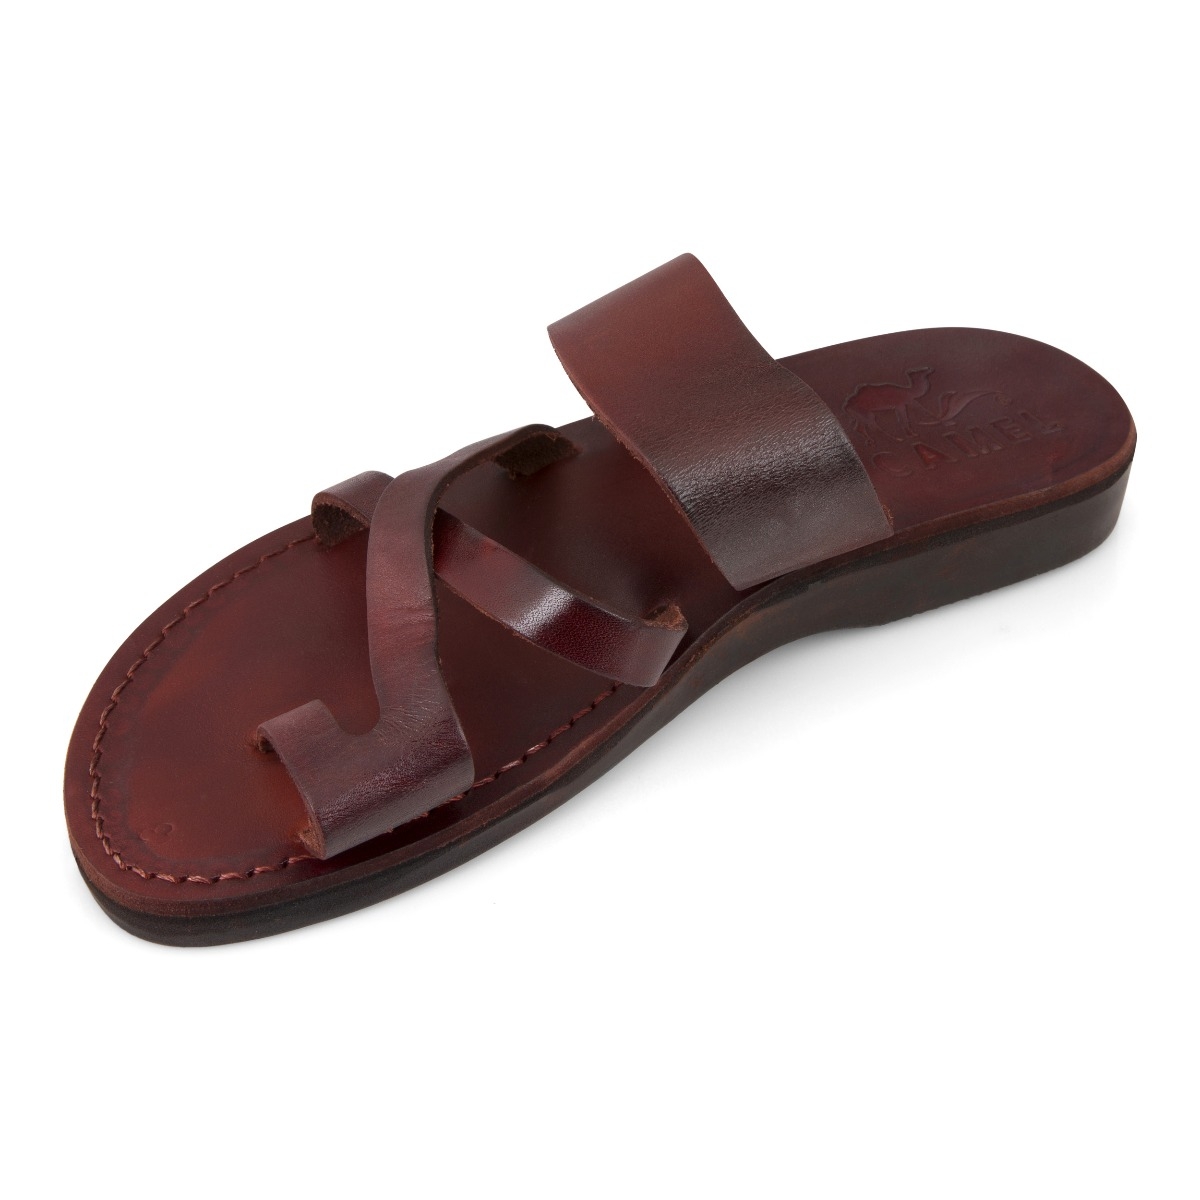 Handmade Judean Hills Leather Sandals - 2